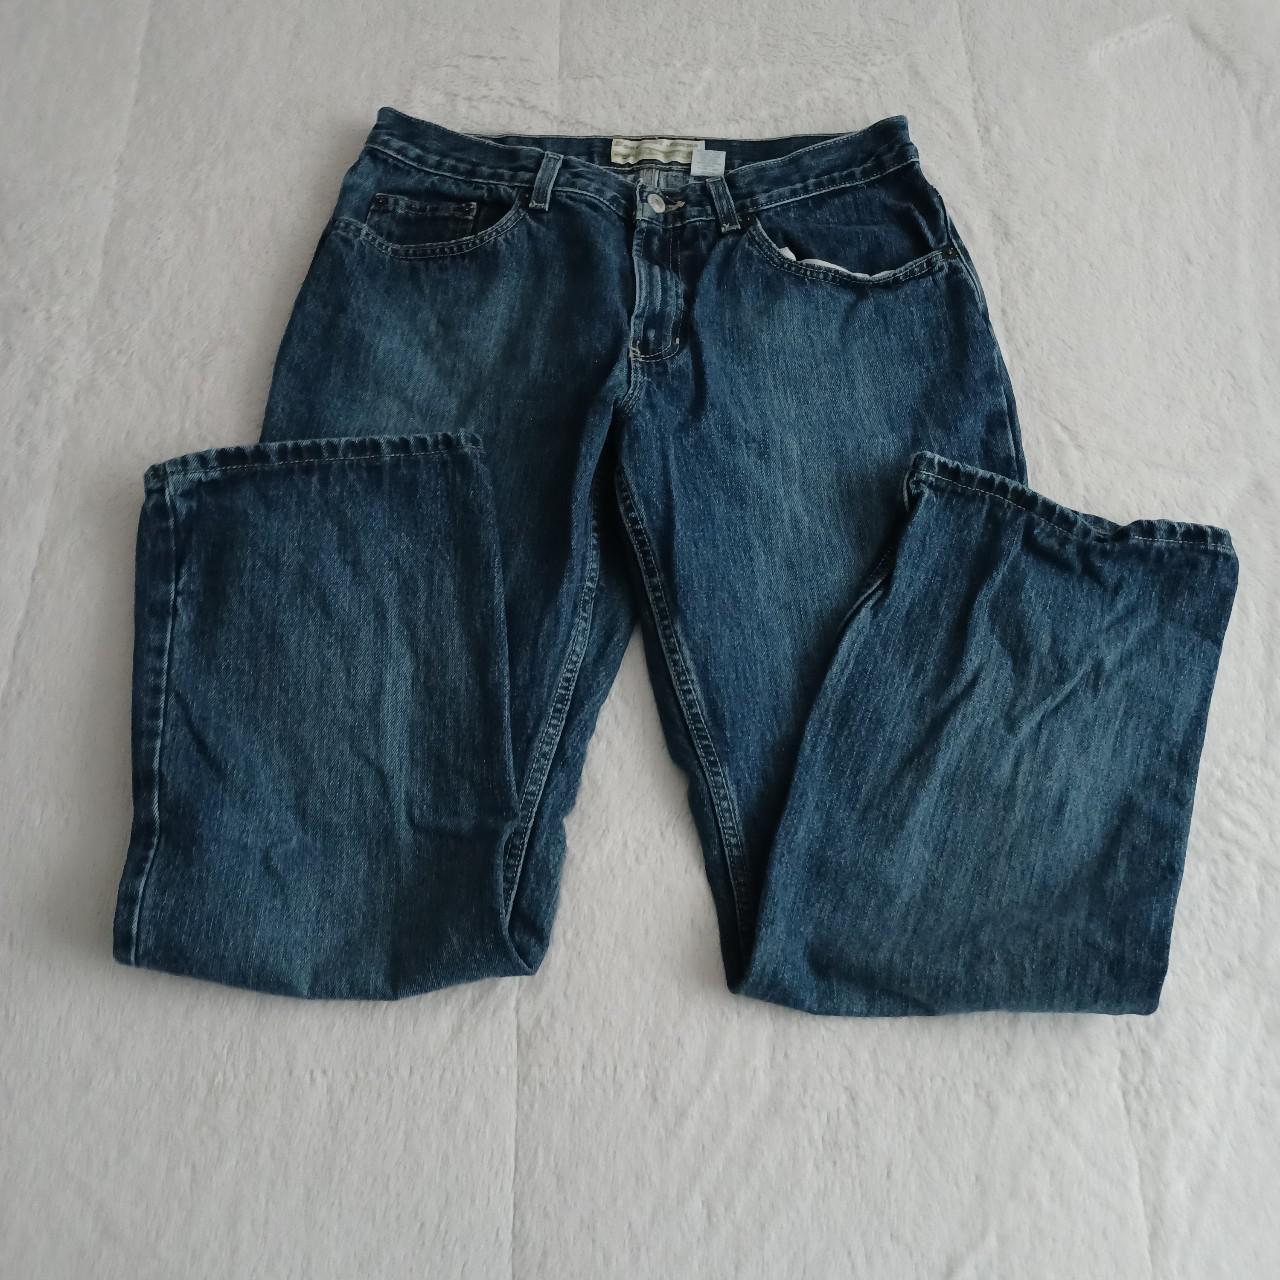 Old Navy y2k bootcut jeans. Baggier fit throughout... - Depop